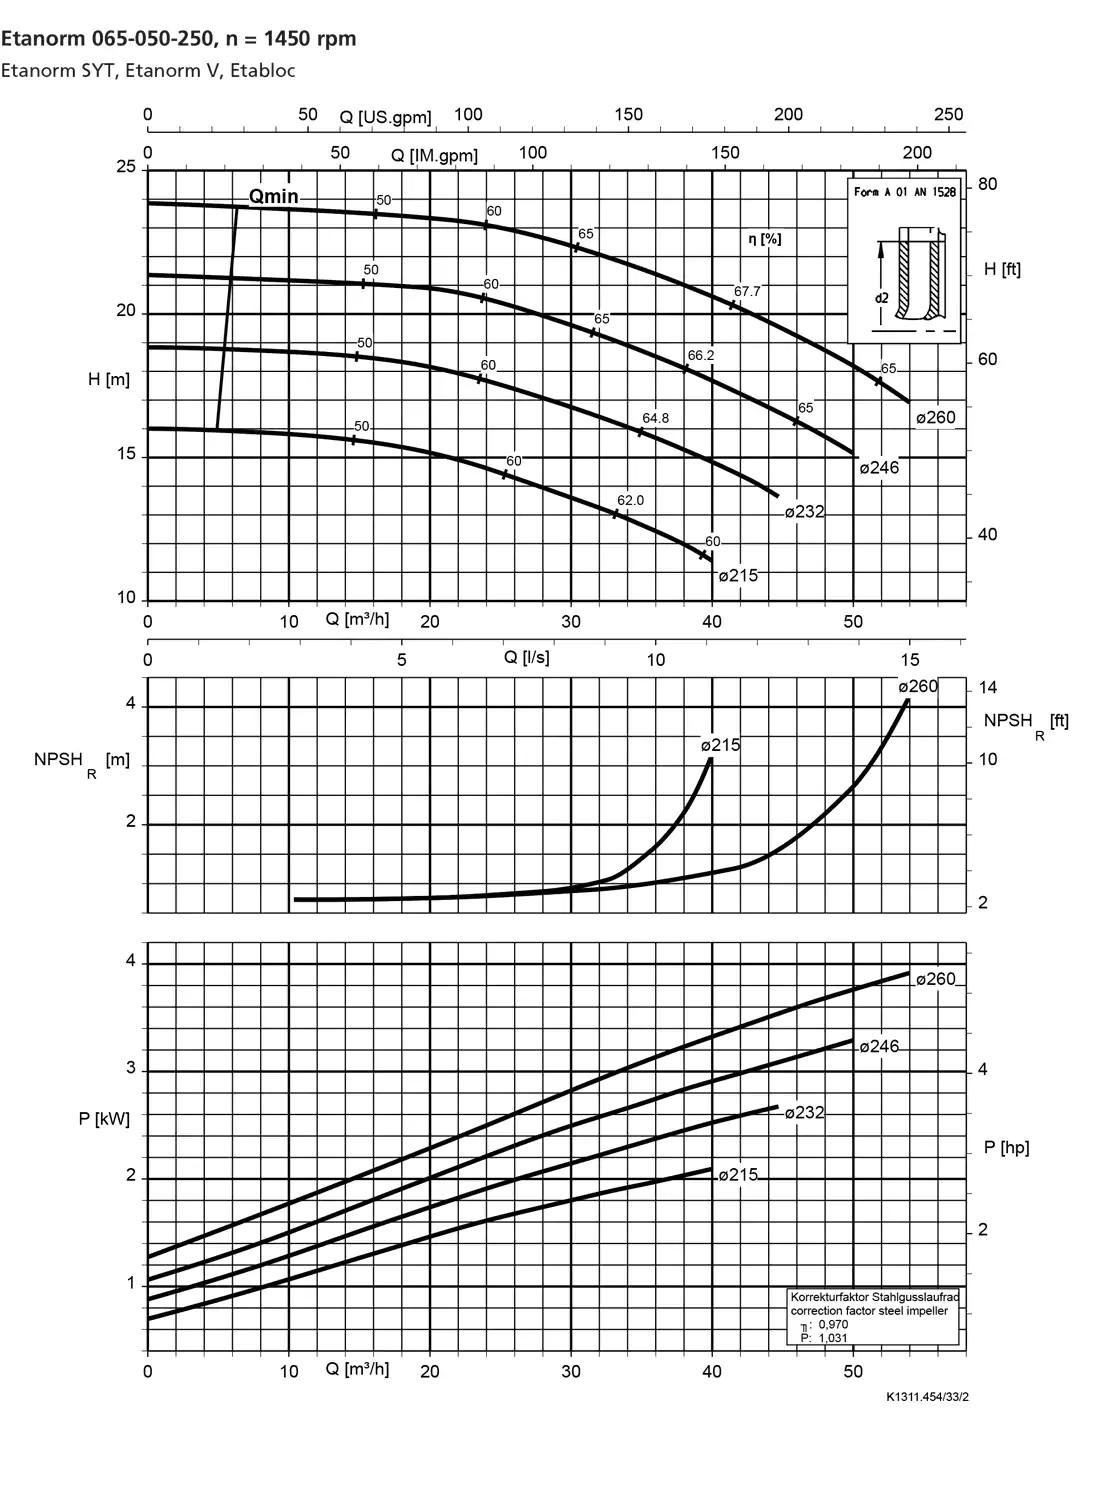 نمودار-کارکرد-پمپ-etanorm-syt-65-050-250-1450